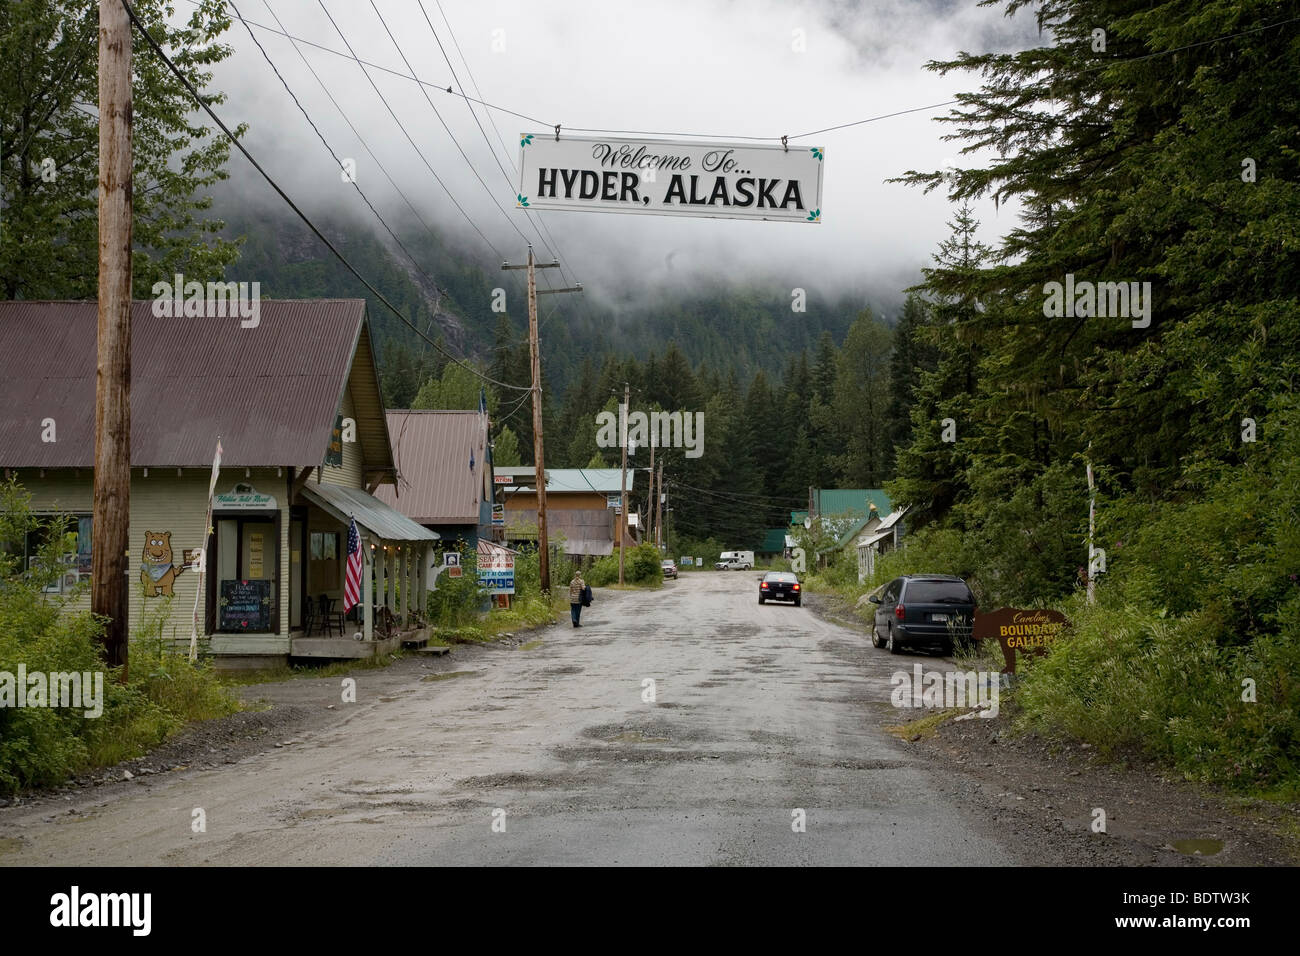 Das Ende der Zivilisation / El fin de la civilización / Hyder - Alaska Foto de stock